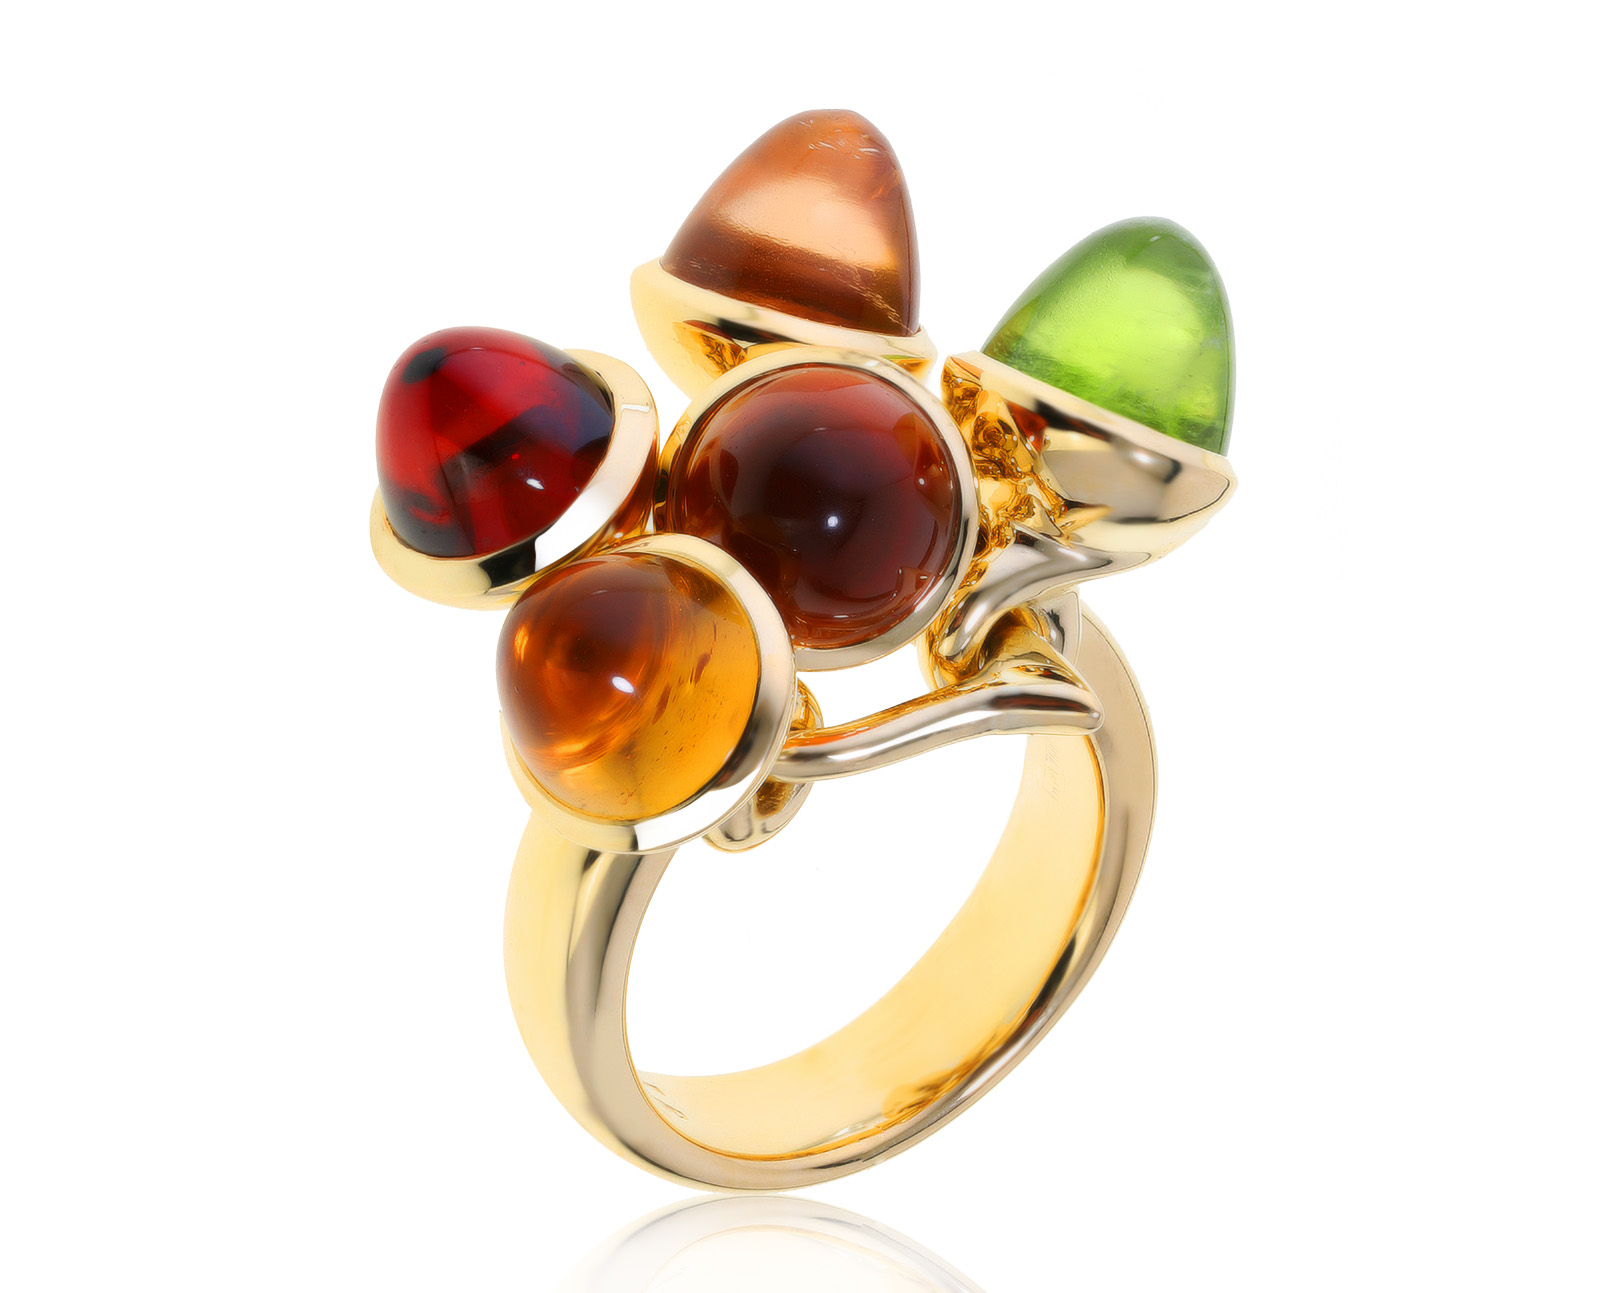 Оригинальное золотое кольцо с цветными камнями 15.39ct Tamara Comolli Mikado Flamenco 310821/3